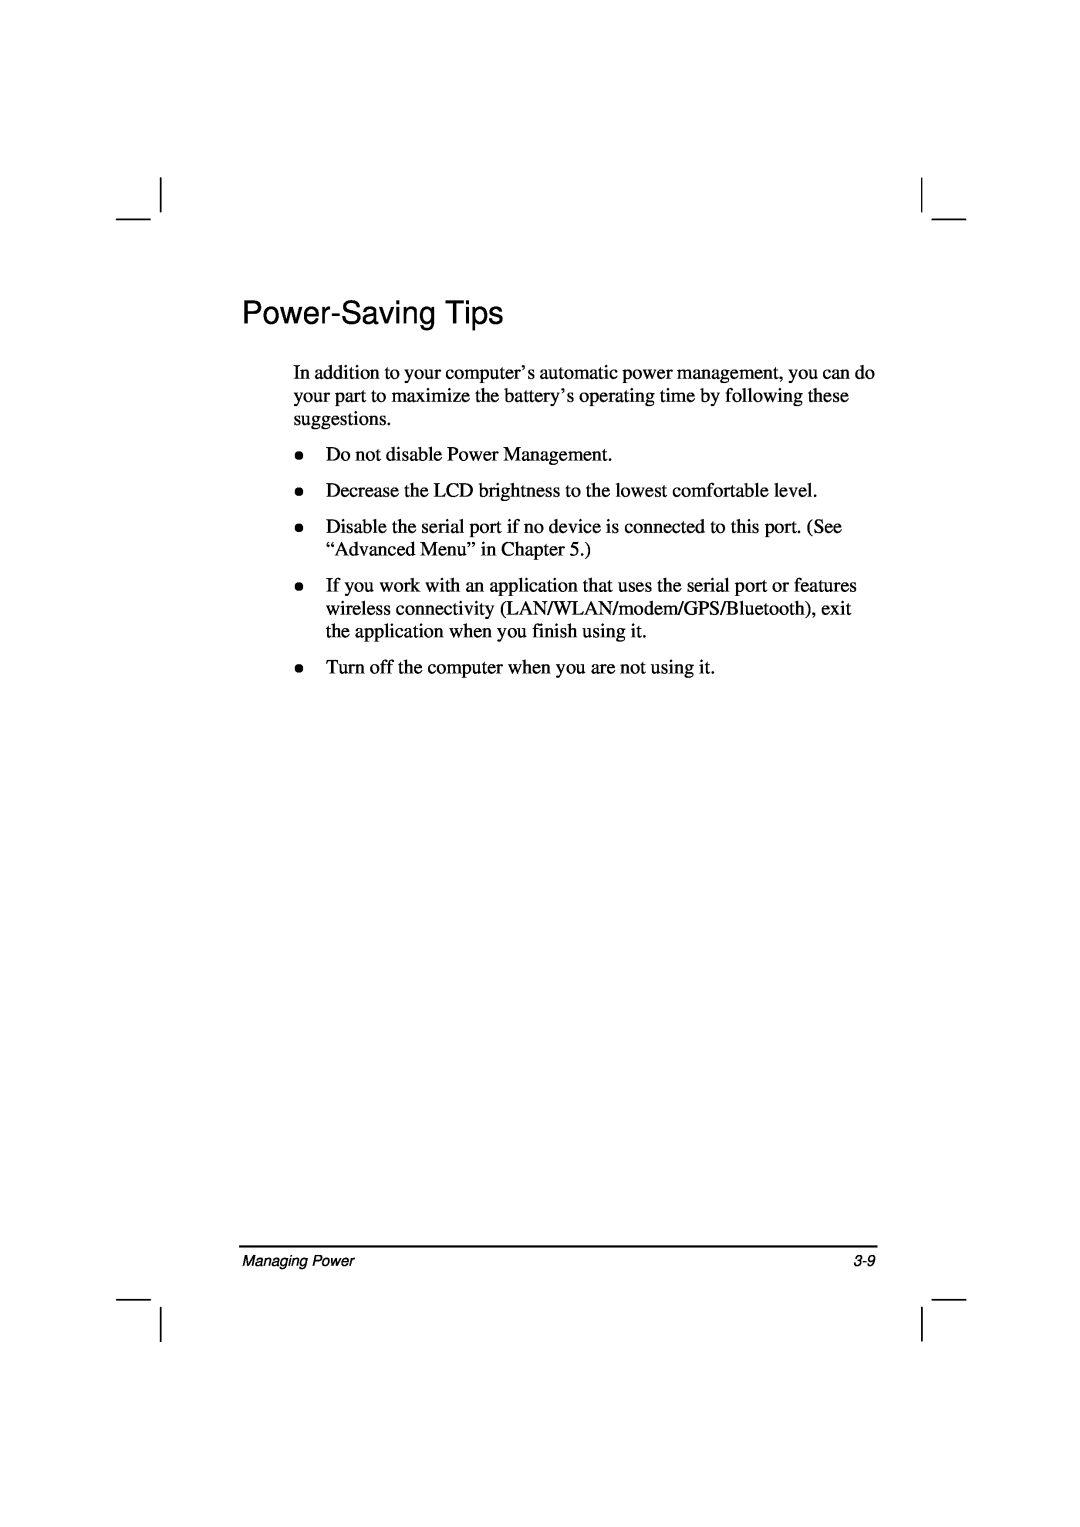 Casio HK1223 owner manual Power-Saving Tips 